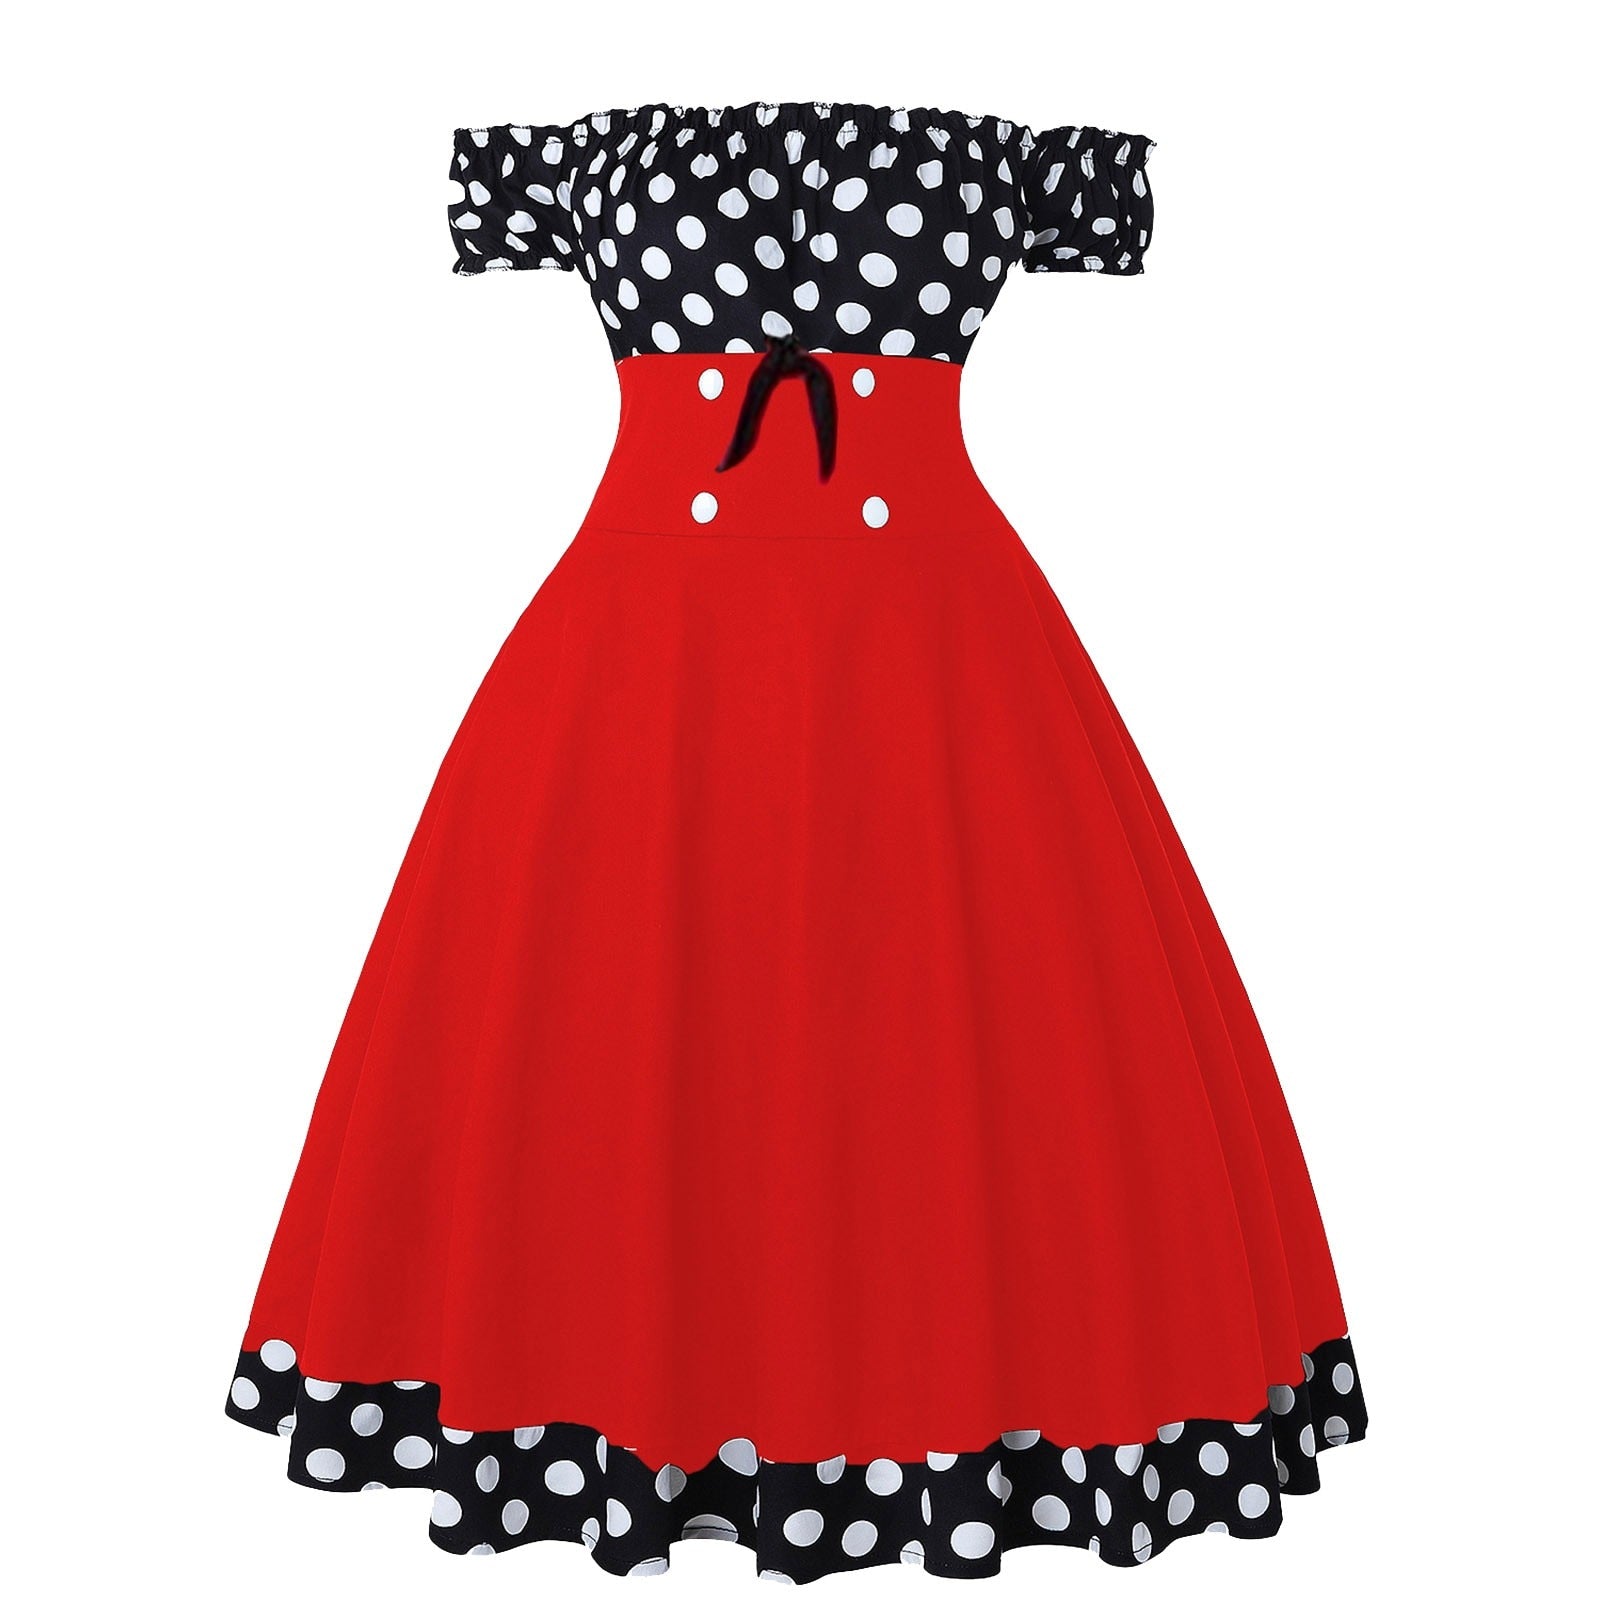 Elegant off-the-shoulder vintage A-line dress